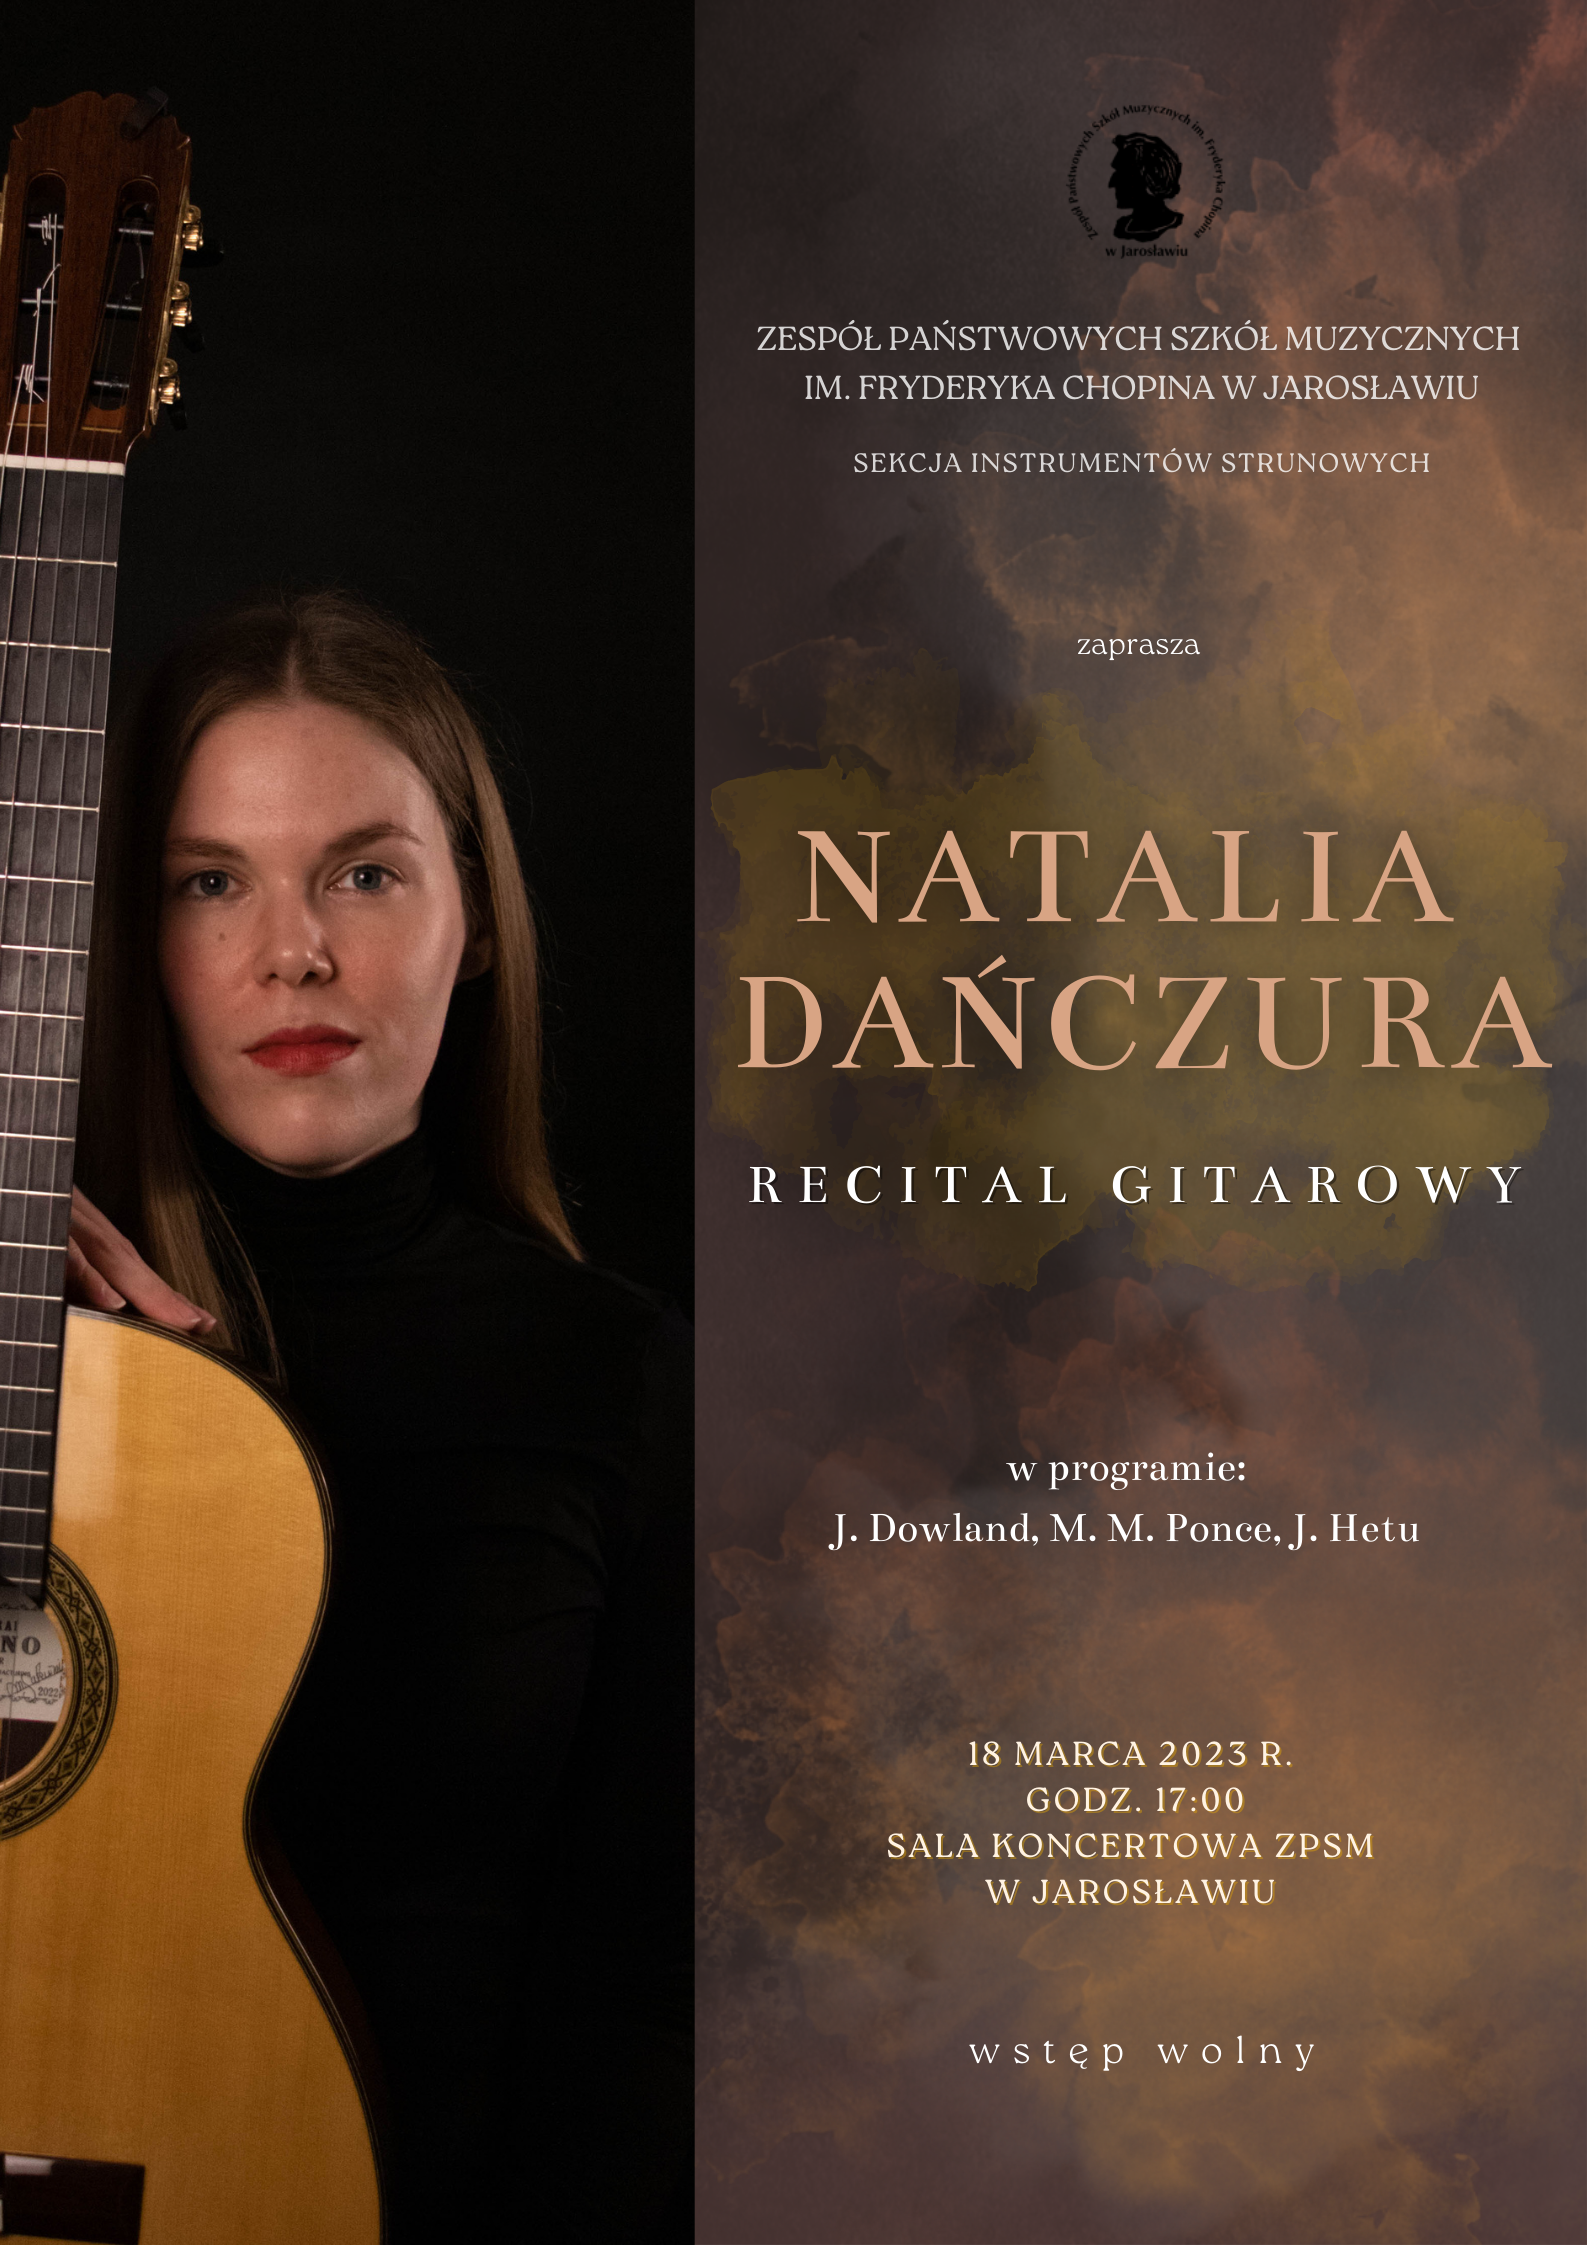 Plakat reklamowy recitalu gitarowego Natalii Dańczura. Plakat podzielony z pionie - w 1/3 po lewej stronie na czarnym tle zdjęcie stojącej artystki z gitarą po prawej stronie na ciemnobrązowym tle o teksturze kamienia informacja: ZPSM im. F. Chopina w Jarosławiu, Sekcja Instrumentów Strunowych zaprasza, na środku prawej części plakatu jasnobrązowy napis: NATALIA DAŃCZURA - RECITAL GITAROWY, w programie: J. Dowland, M. M. Ponee, J. Hetu 18 marca 2023 R, godz.17.00 Sala Koncertowa ZPSM im. F. Chopina w Jarosławiu, wstęp wolny Wstęp wolny